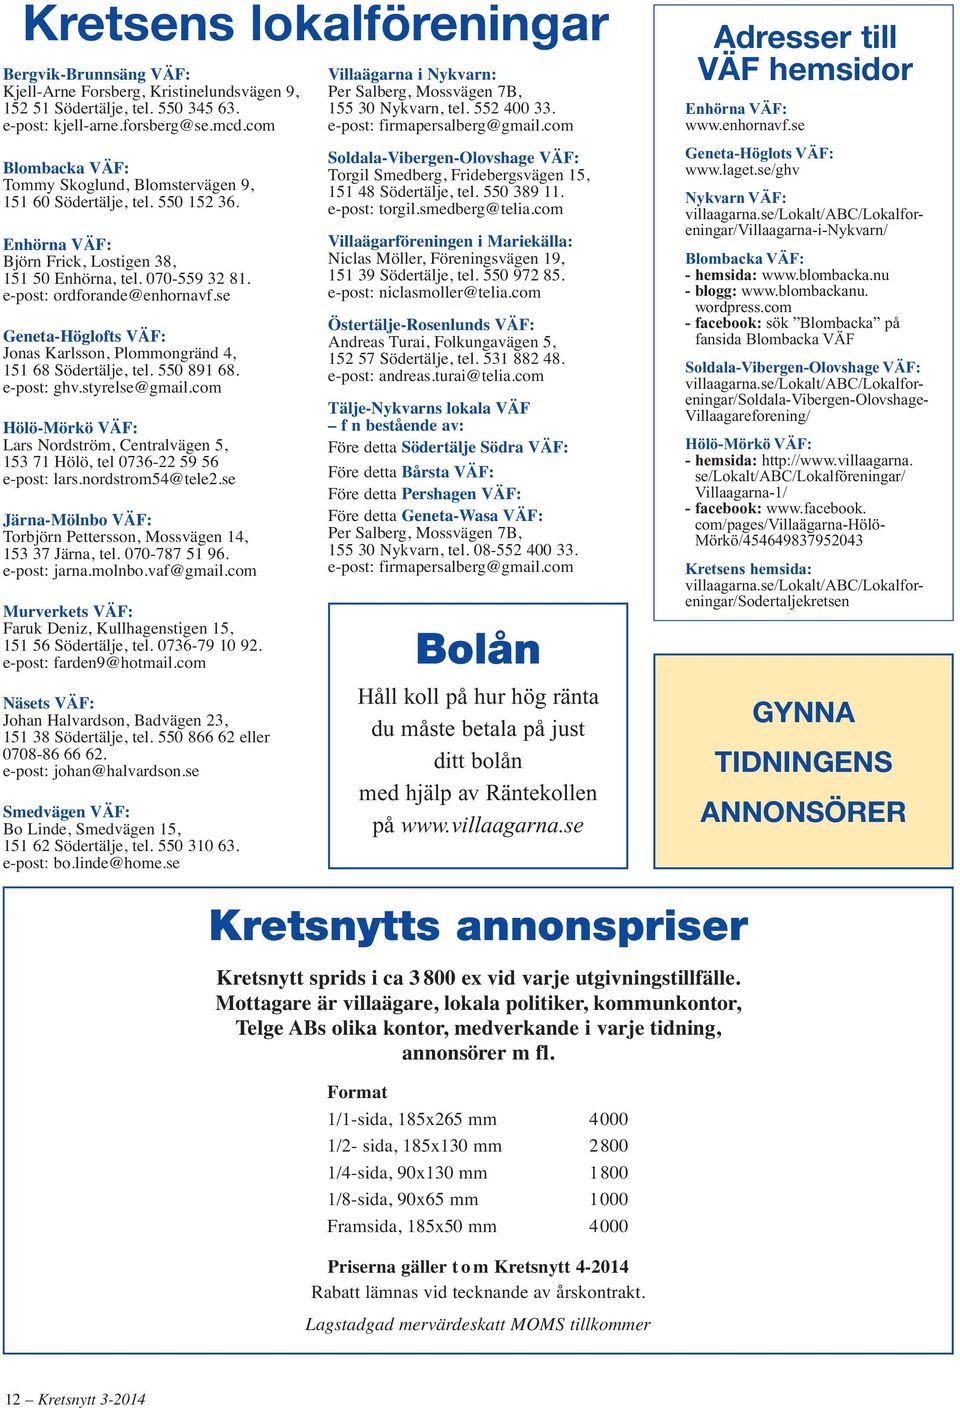 se Geneta-Höglofts VÄF: Jonas Karlsson, Plommongränd 4, 151 68 Södertälje, tel. 550 891 68. e-post: ghv.styrelse@gmail.